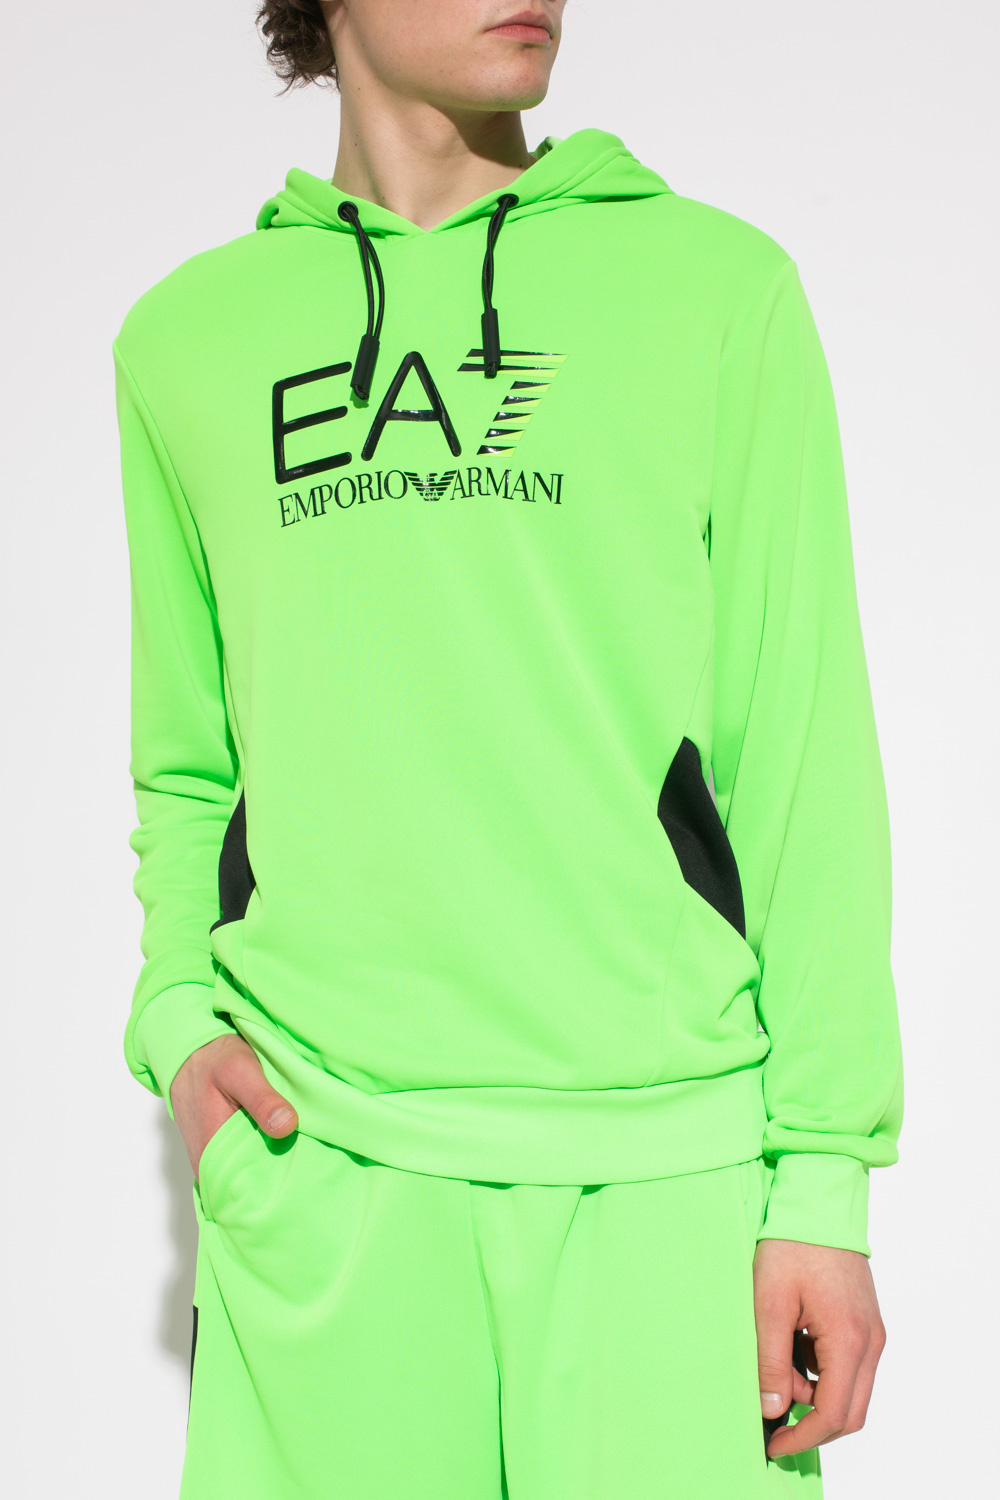 EA7 Emporio emporio armani Hoodie with logo